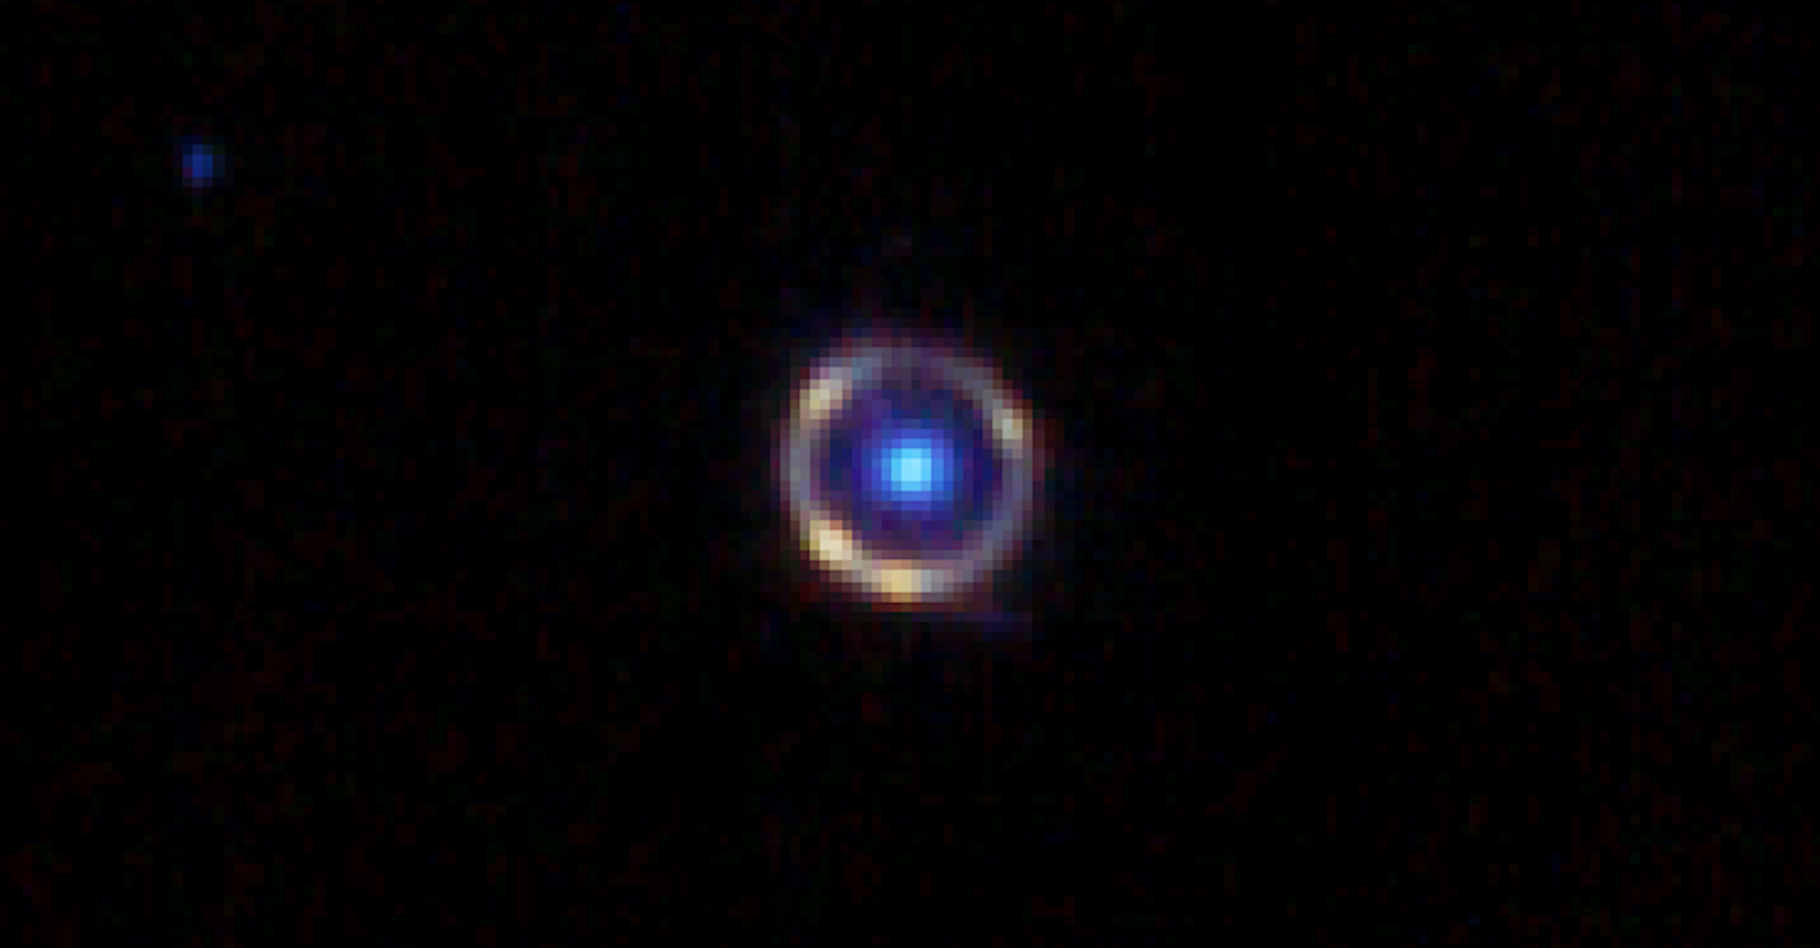 L’anneau d’Einstein de la galaxie JO418 tel que produit par un étudiant diplômé en astronomie à partir des données du télescope spatial James-Webb. © Spaceguy44, Reddit